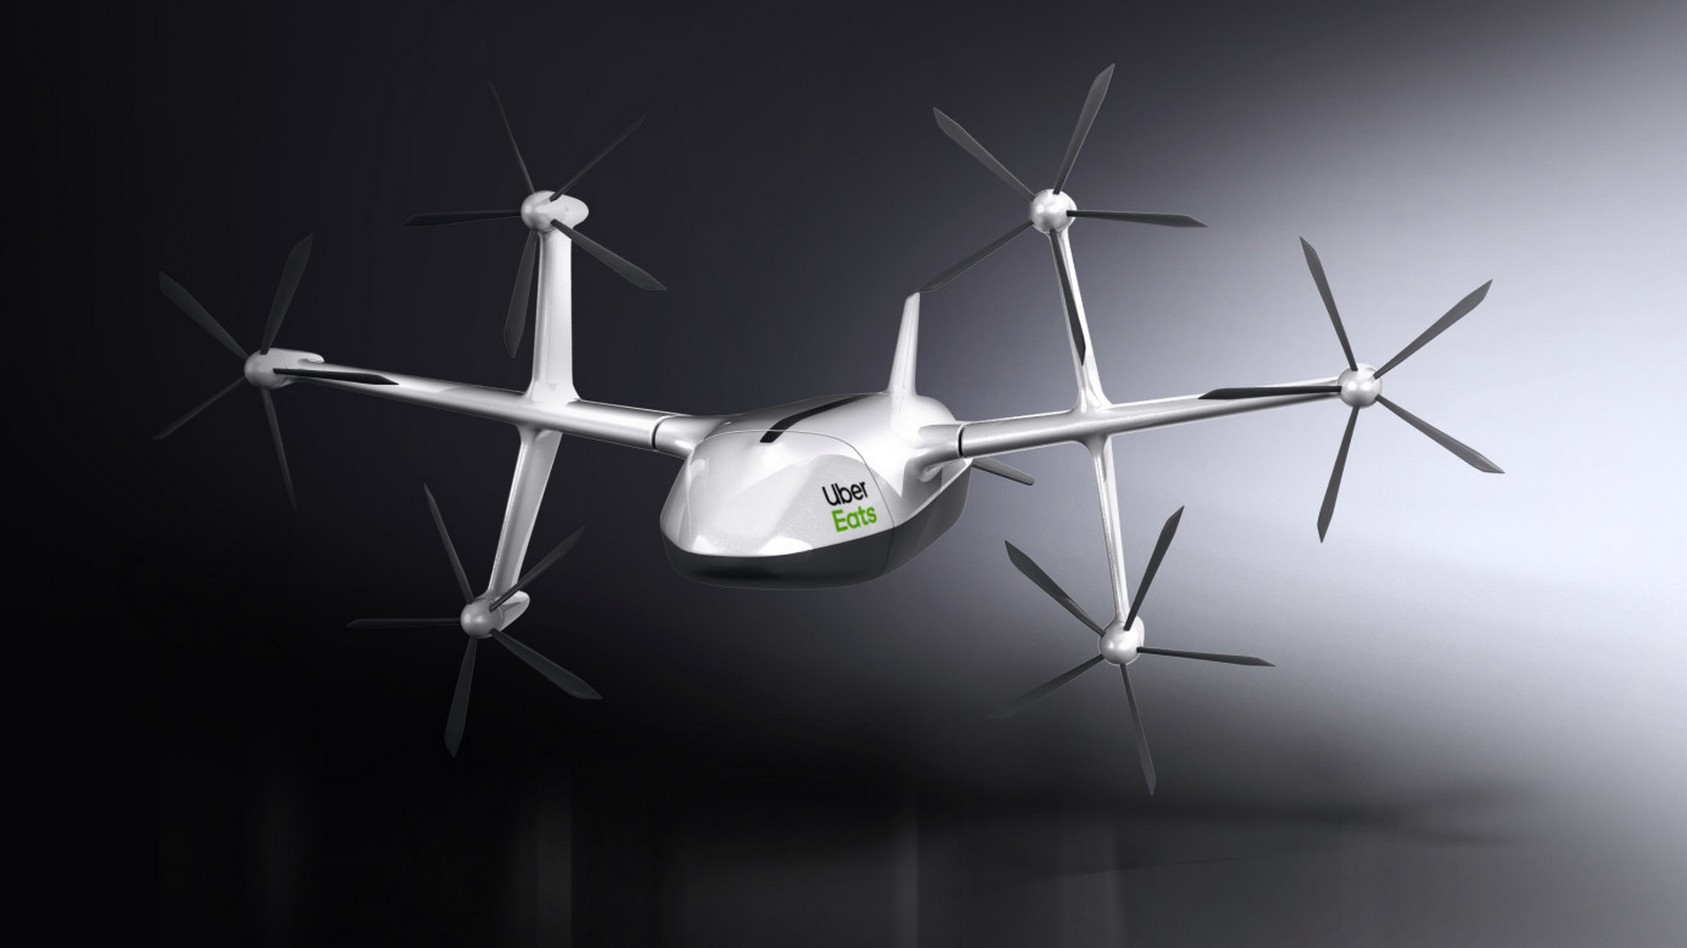 Voici à quoi ressemble le drone de livraison Uber Eats. © Uber Eats